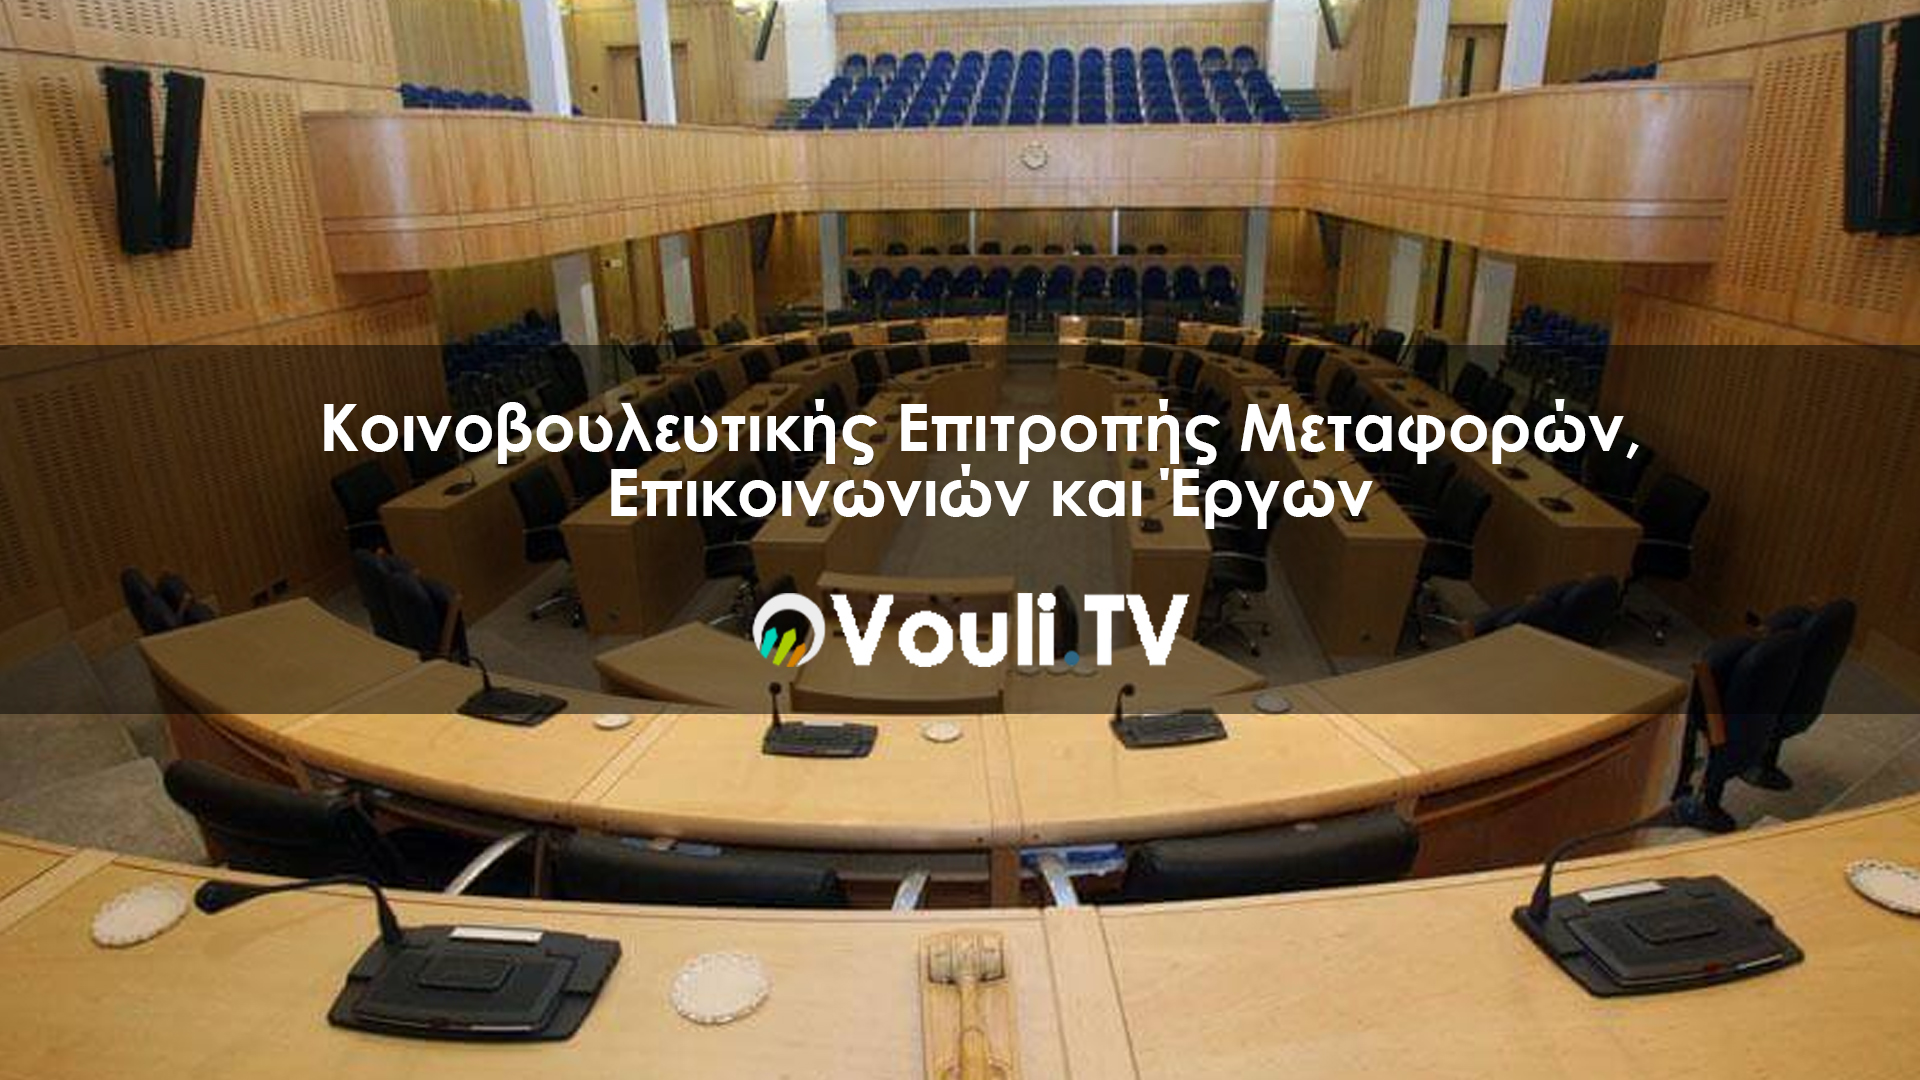 Κοινοβουλευτική Επιτροπή Μεταφορών, Επικοινωνιών και Έργων | Vouli report - 09/10/2020